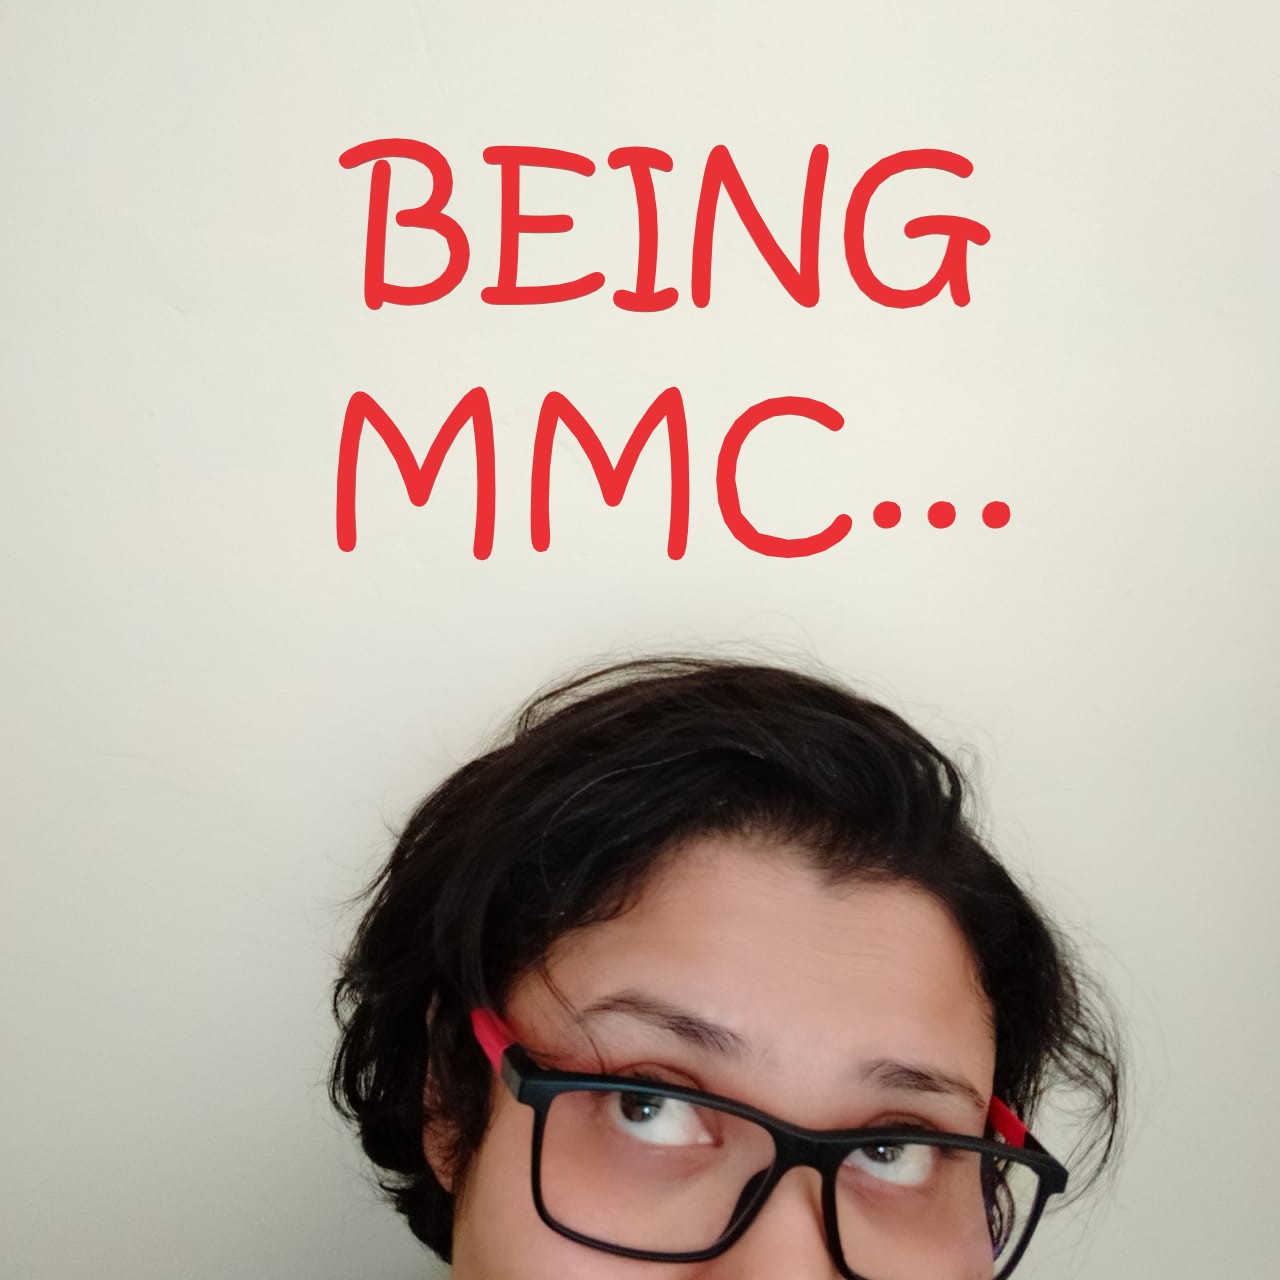 Being MMC…